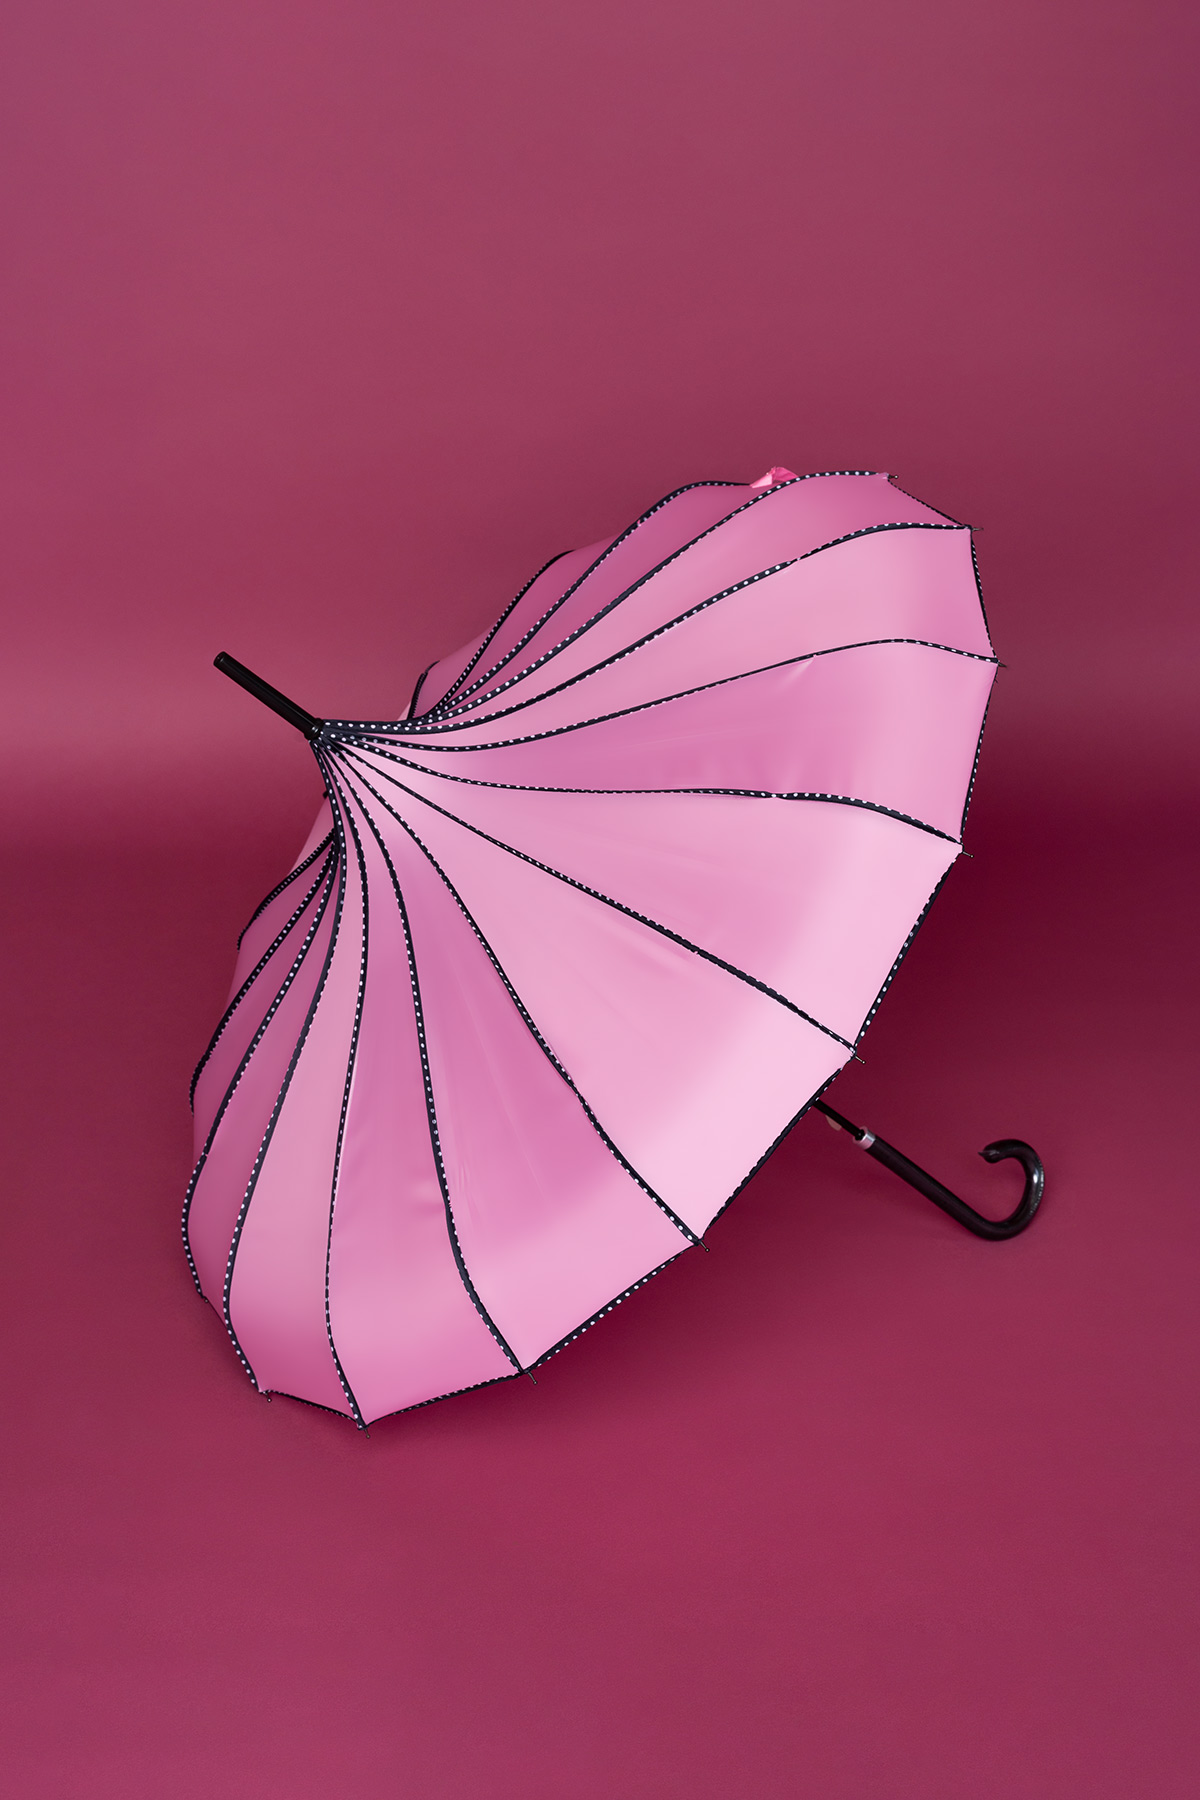 Ροζ ομπρέλα σε σχήμα παγόδας, με μαύρες λωρίδες πουά, ιδανική τόσο για τον ήλιο όσο και τη βροχή!